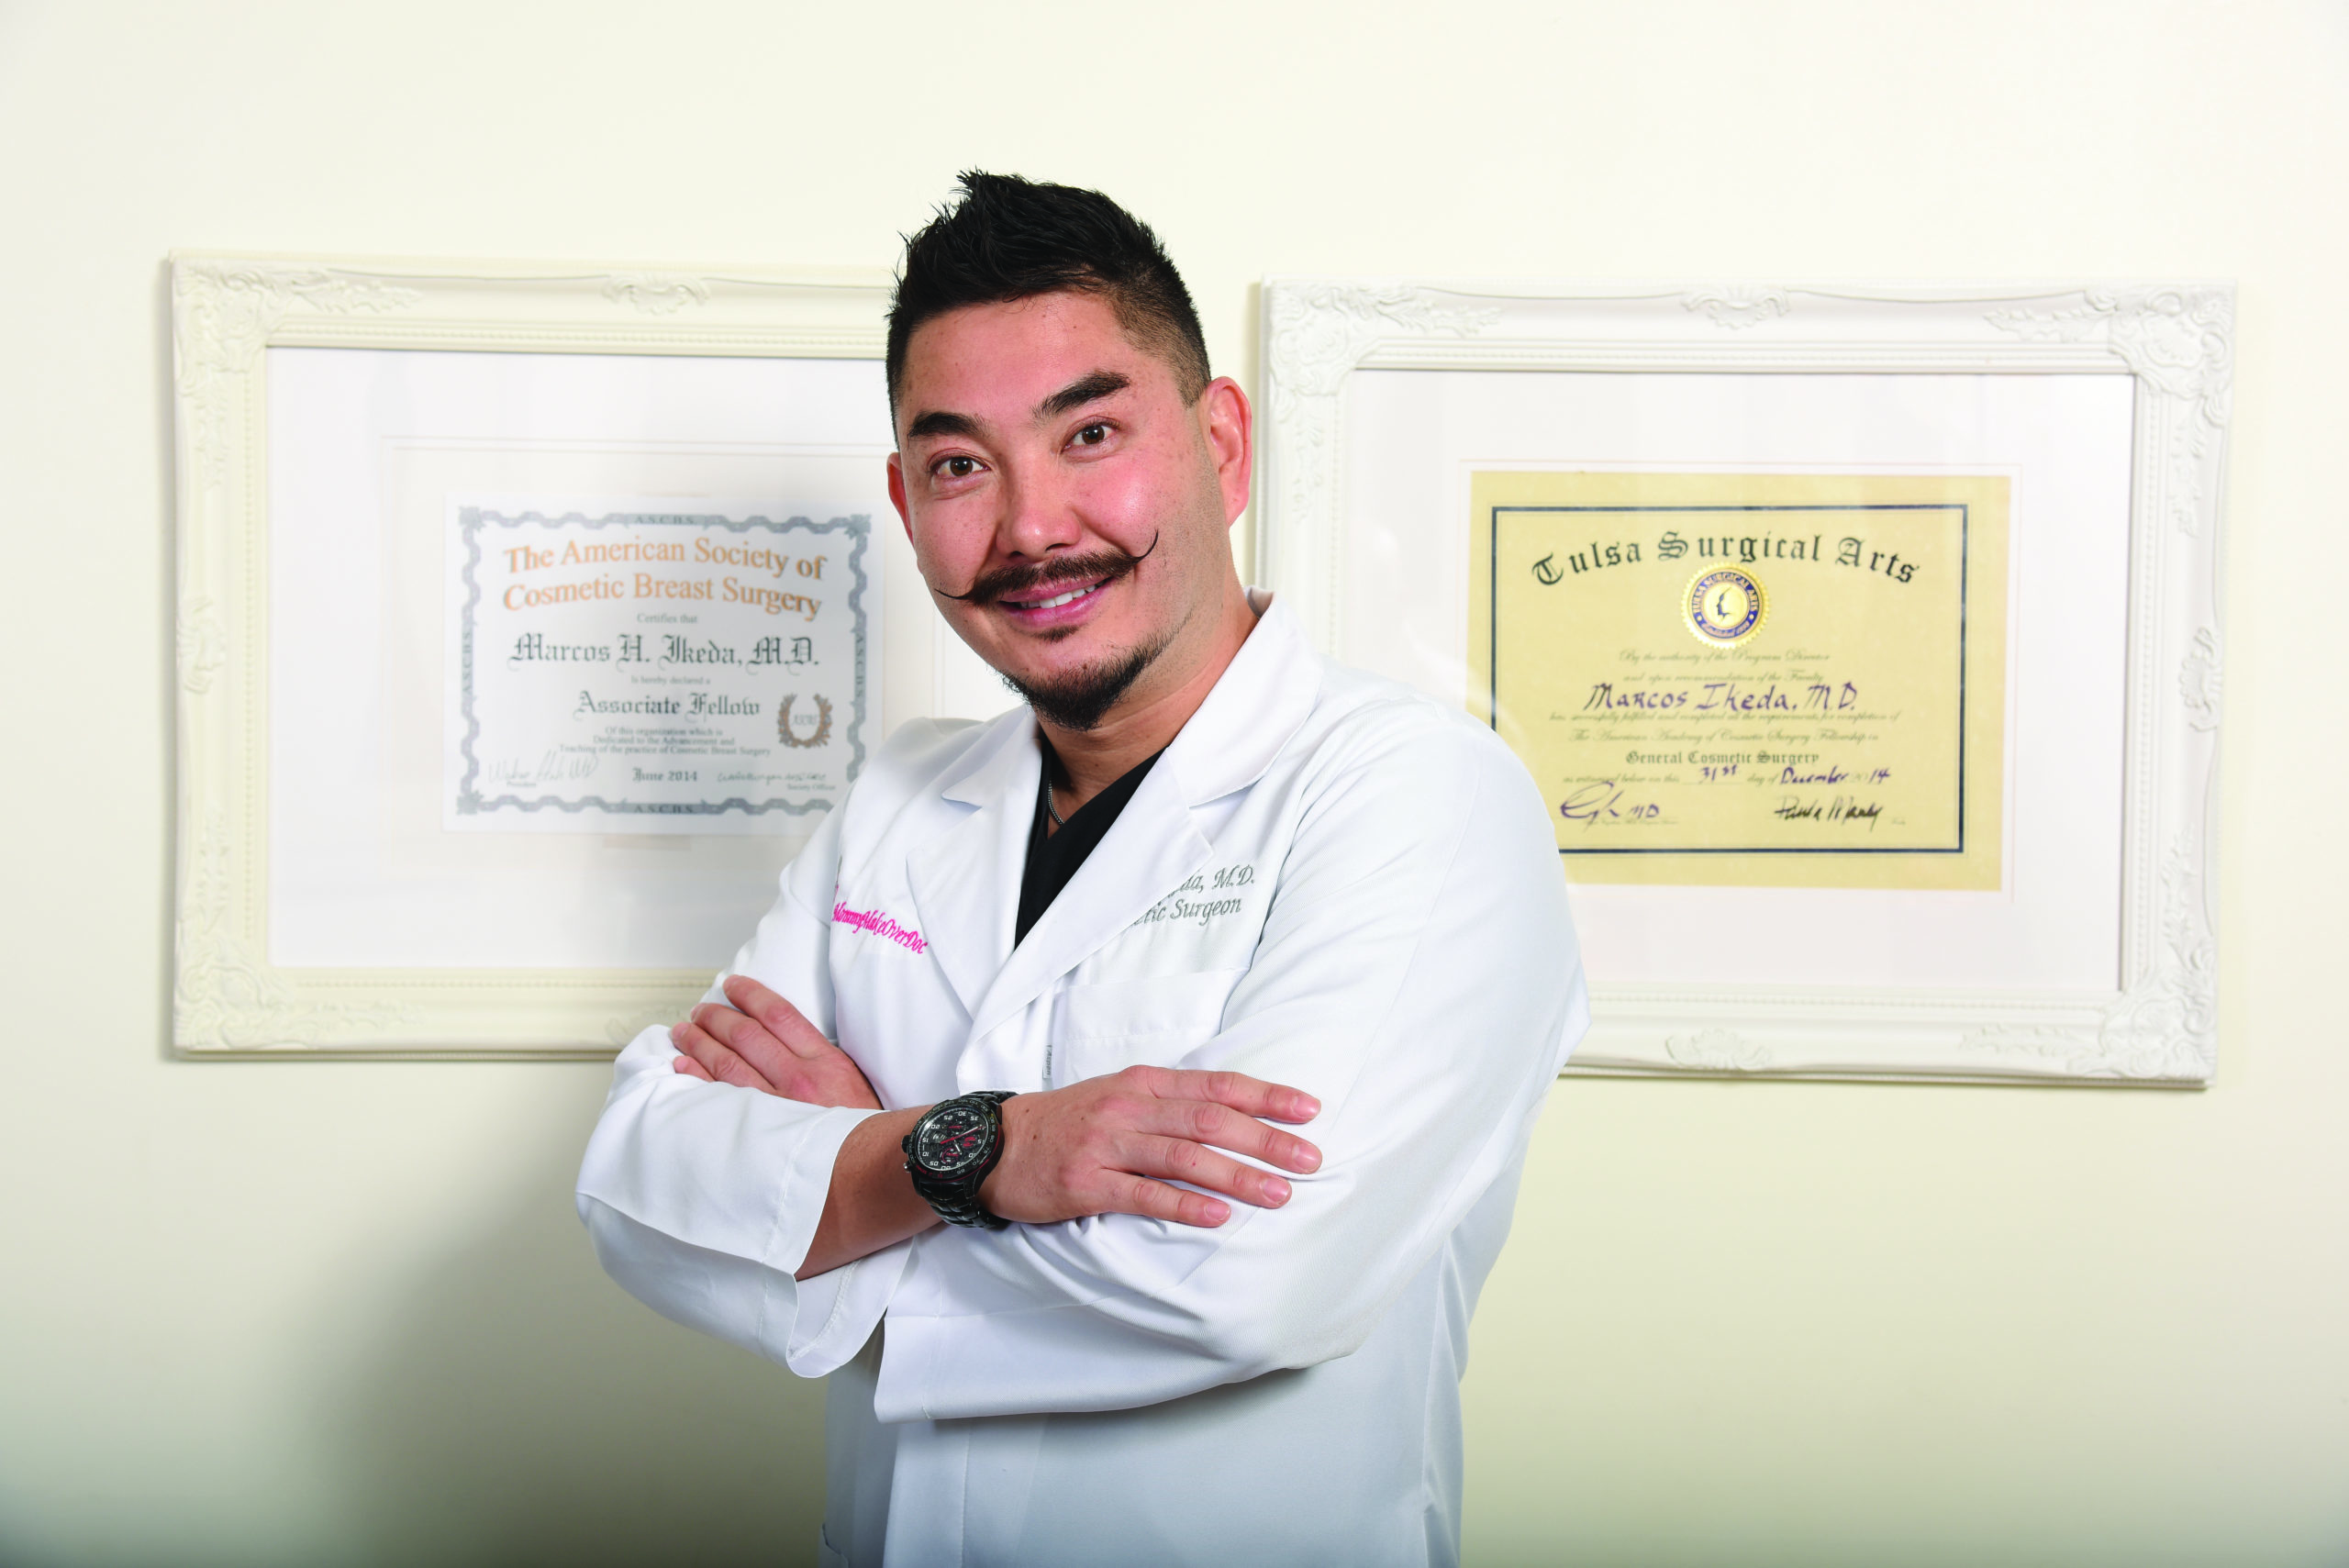 Dr. Ikeda